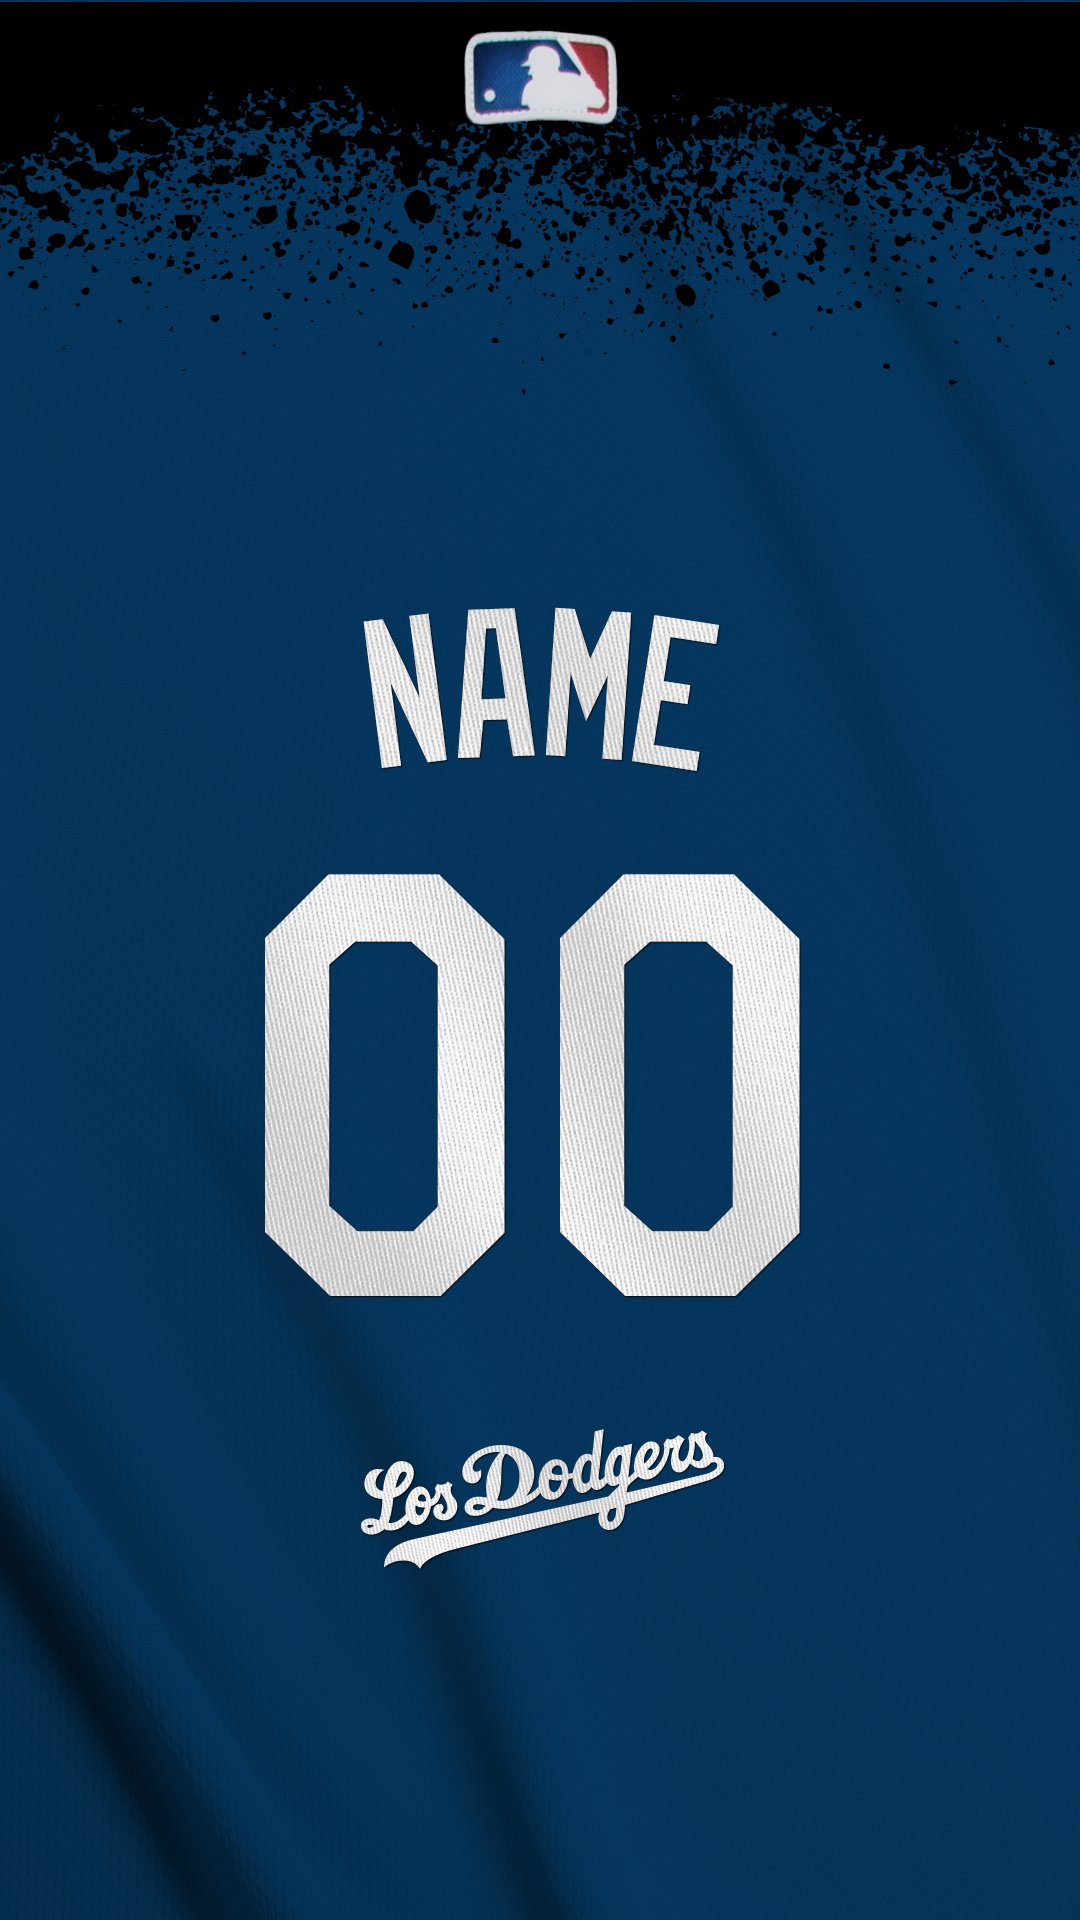 Dodgers Stadium wallpaper by dodgercutie  Download on ZEDGE  909b